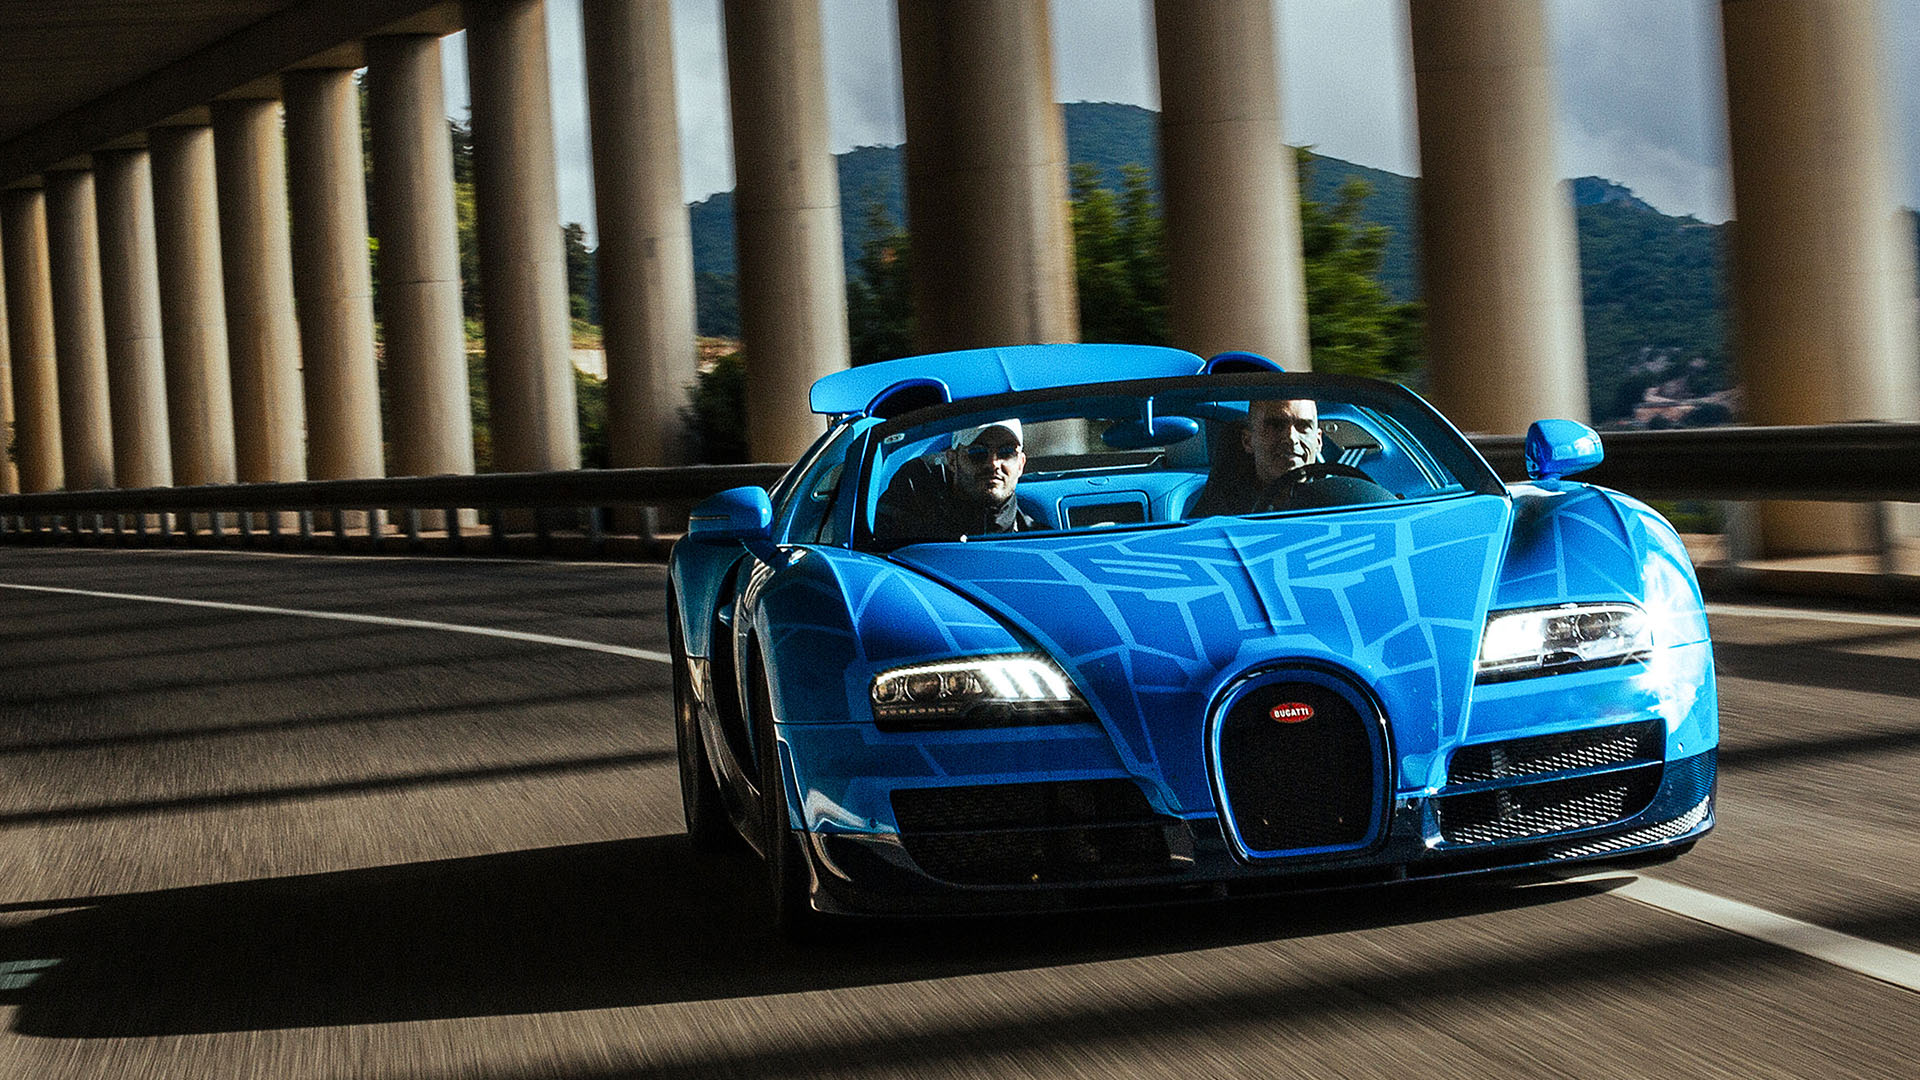 Bugatti Grand Tour explores Sardinia